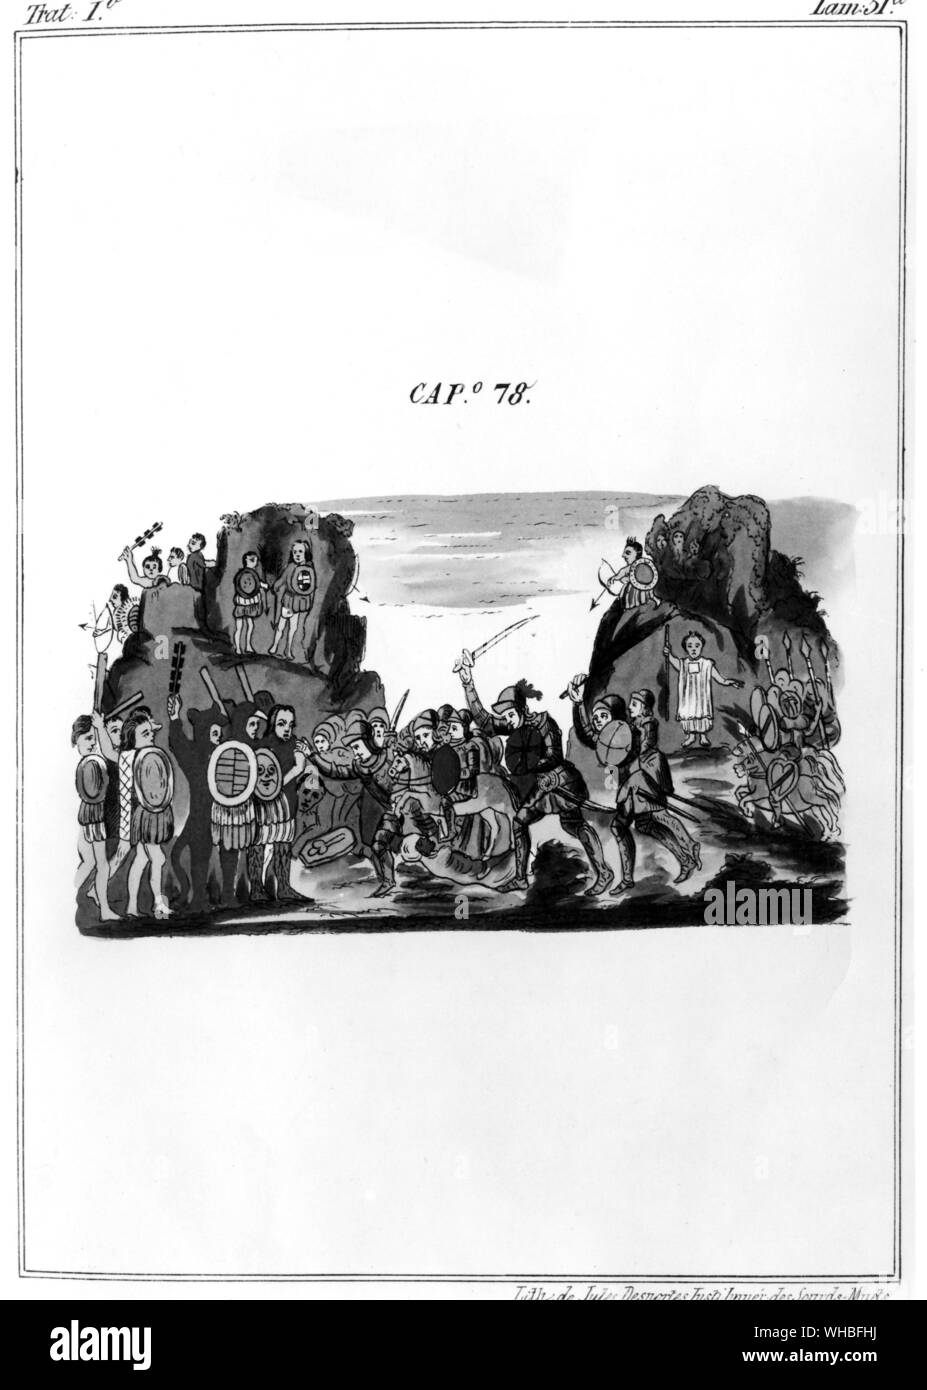 Cortes Eroberung der Azteken von Pater Diego Durans Buch Geschichte der Indianer des Neuen Spanien Stockfoto